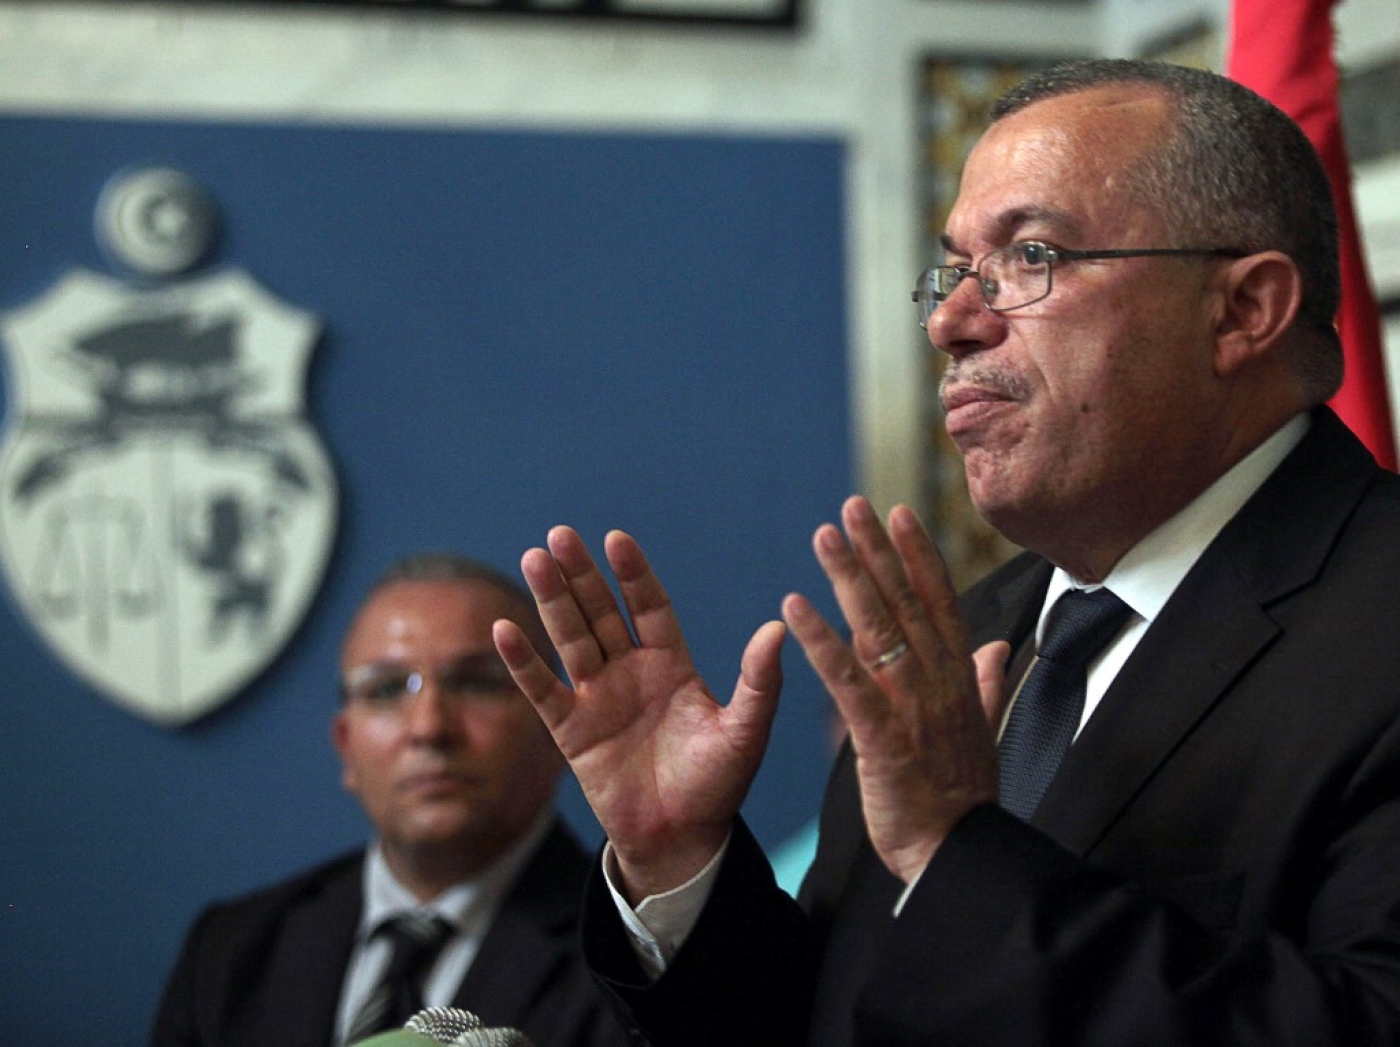 Le ministre tunisien de l’Intérieur a justifié lundi l’arrestation de l’homme fort d’Ennahdha, Noureddine Bhiri, par « des soupçons de terrorisme dans le dossier » (AFP/Fethi Belaïd)